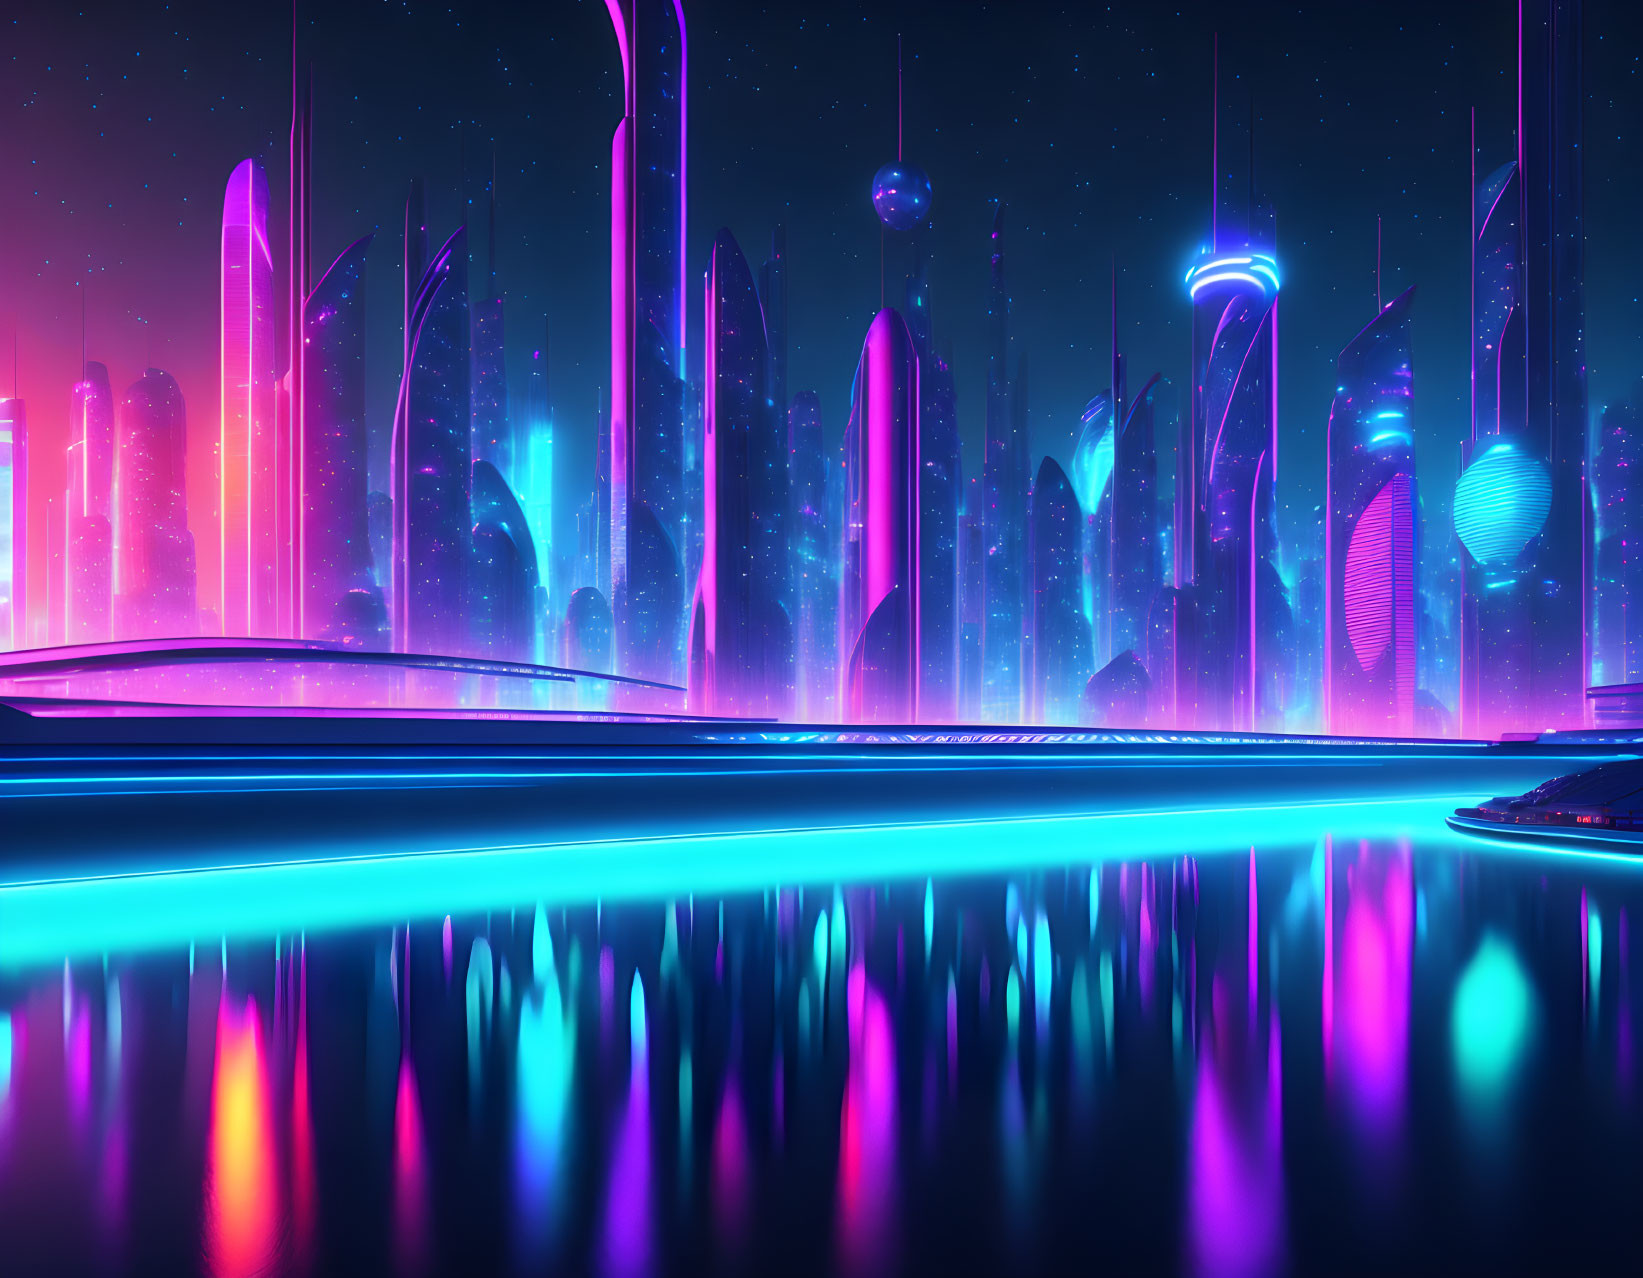 Futuristic neon-lit cityscape with vibrant colors